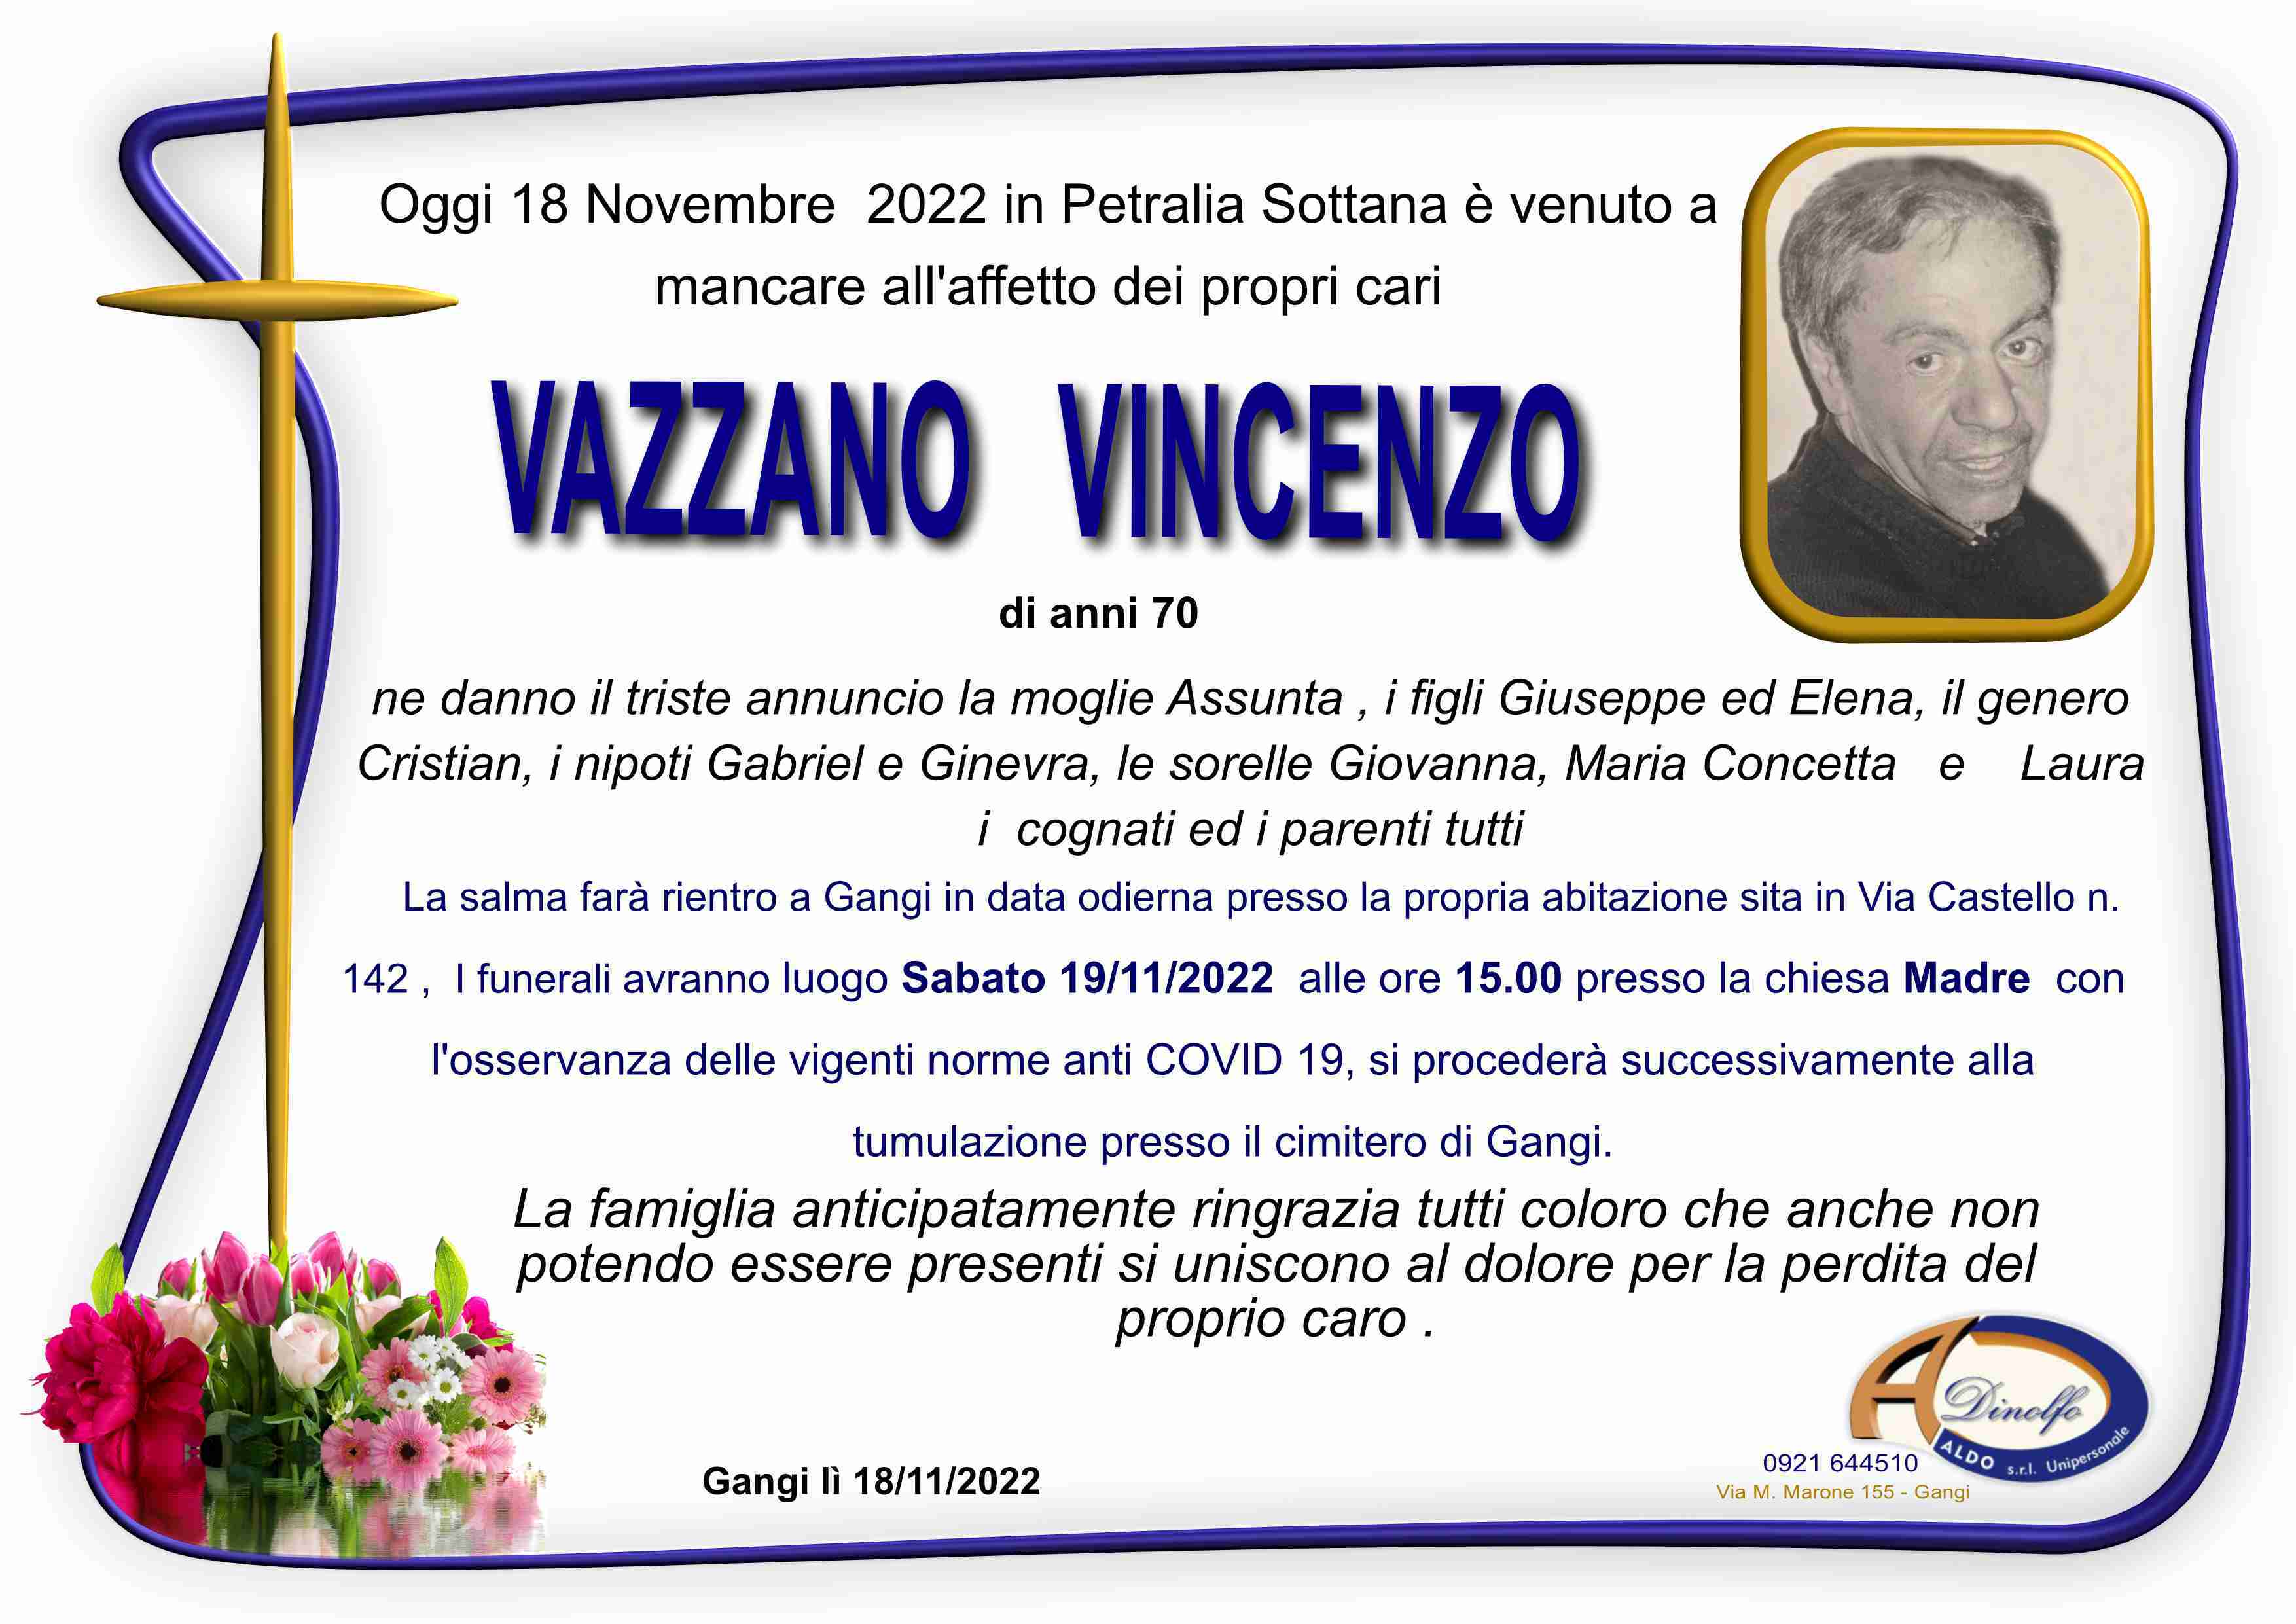 Vincenzo Vazzano